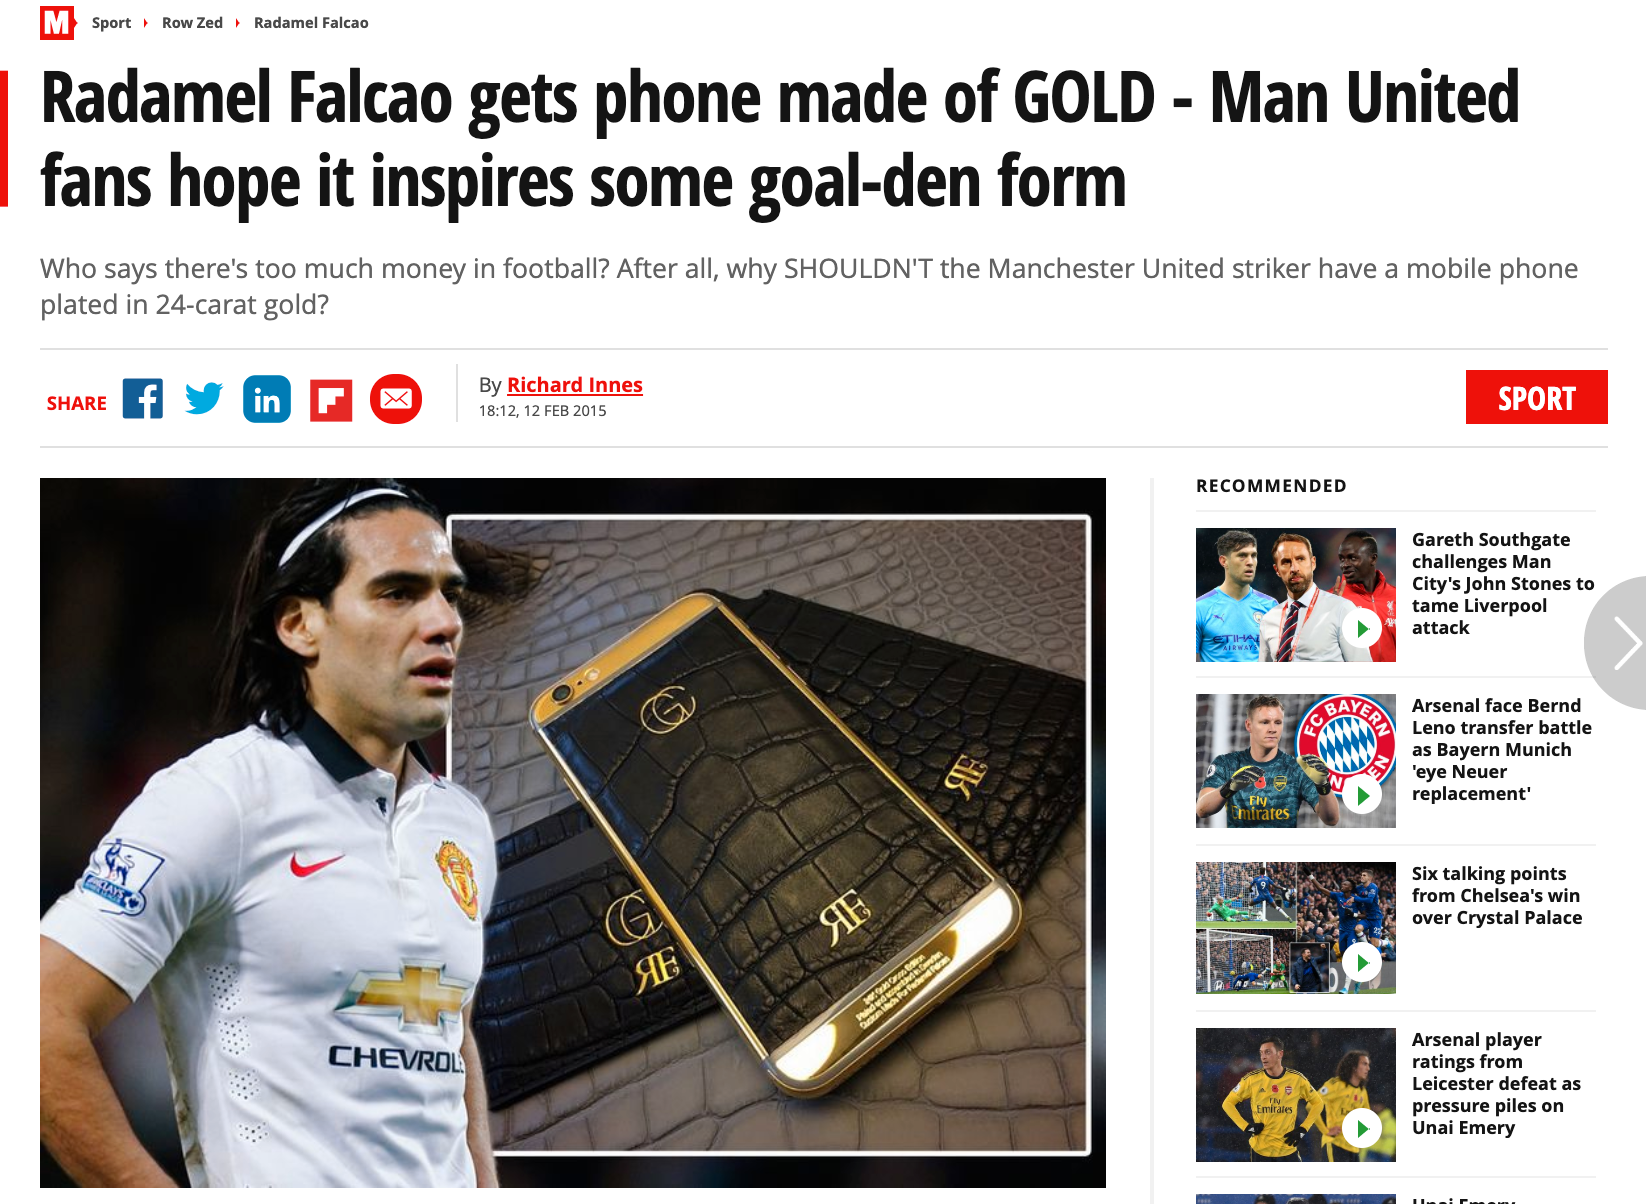 Daily Mirror var en av många brittiska tabloider som skrev om Falcaos dyra mobil när det begav sig.